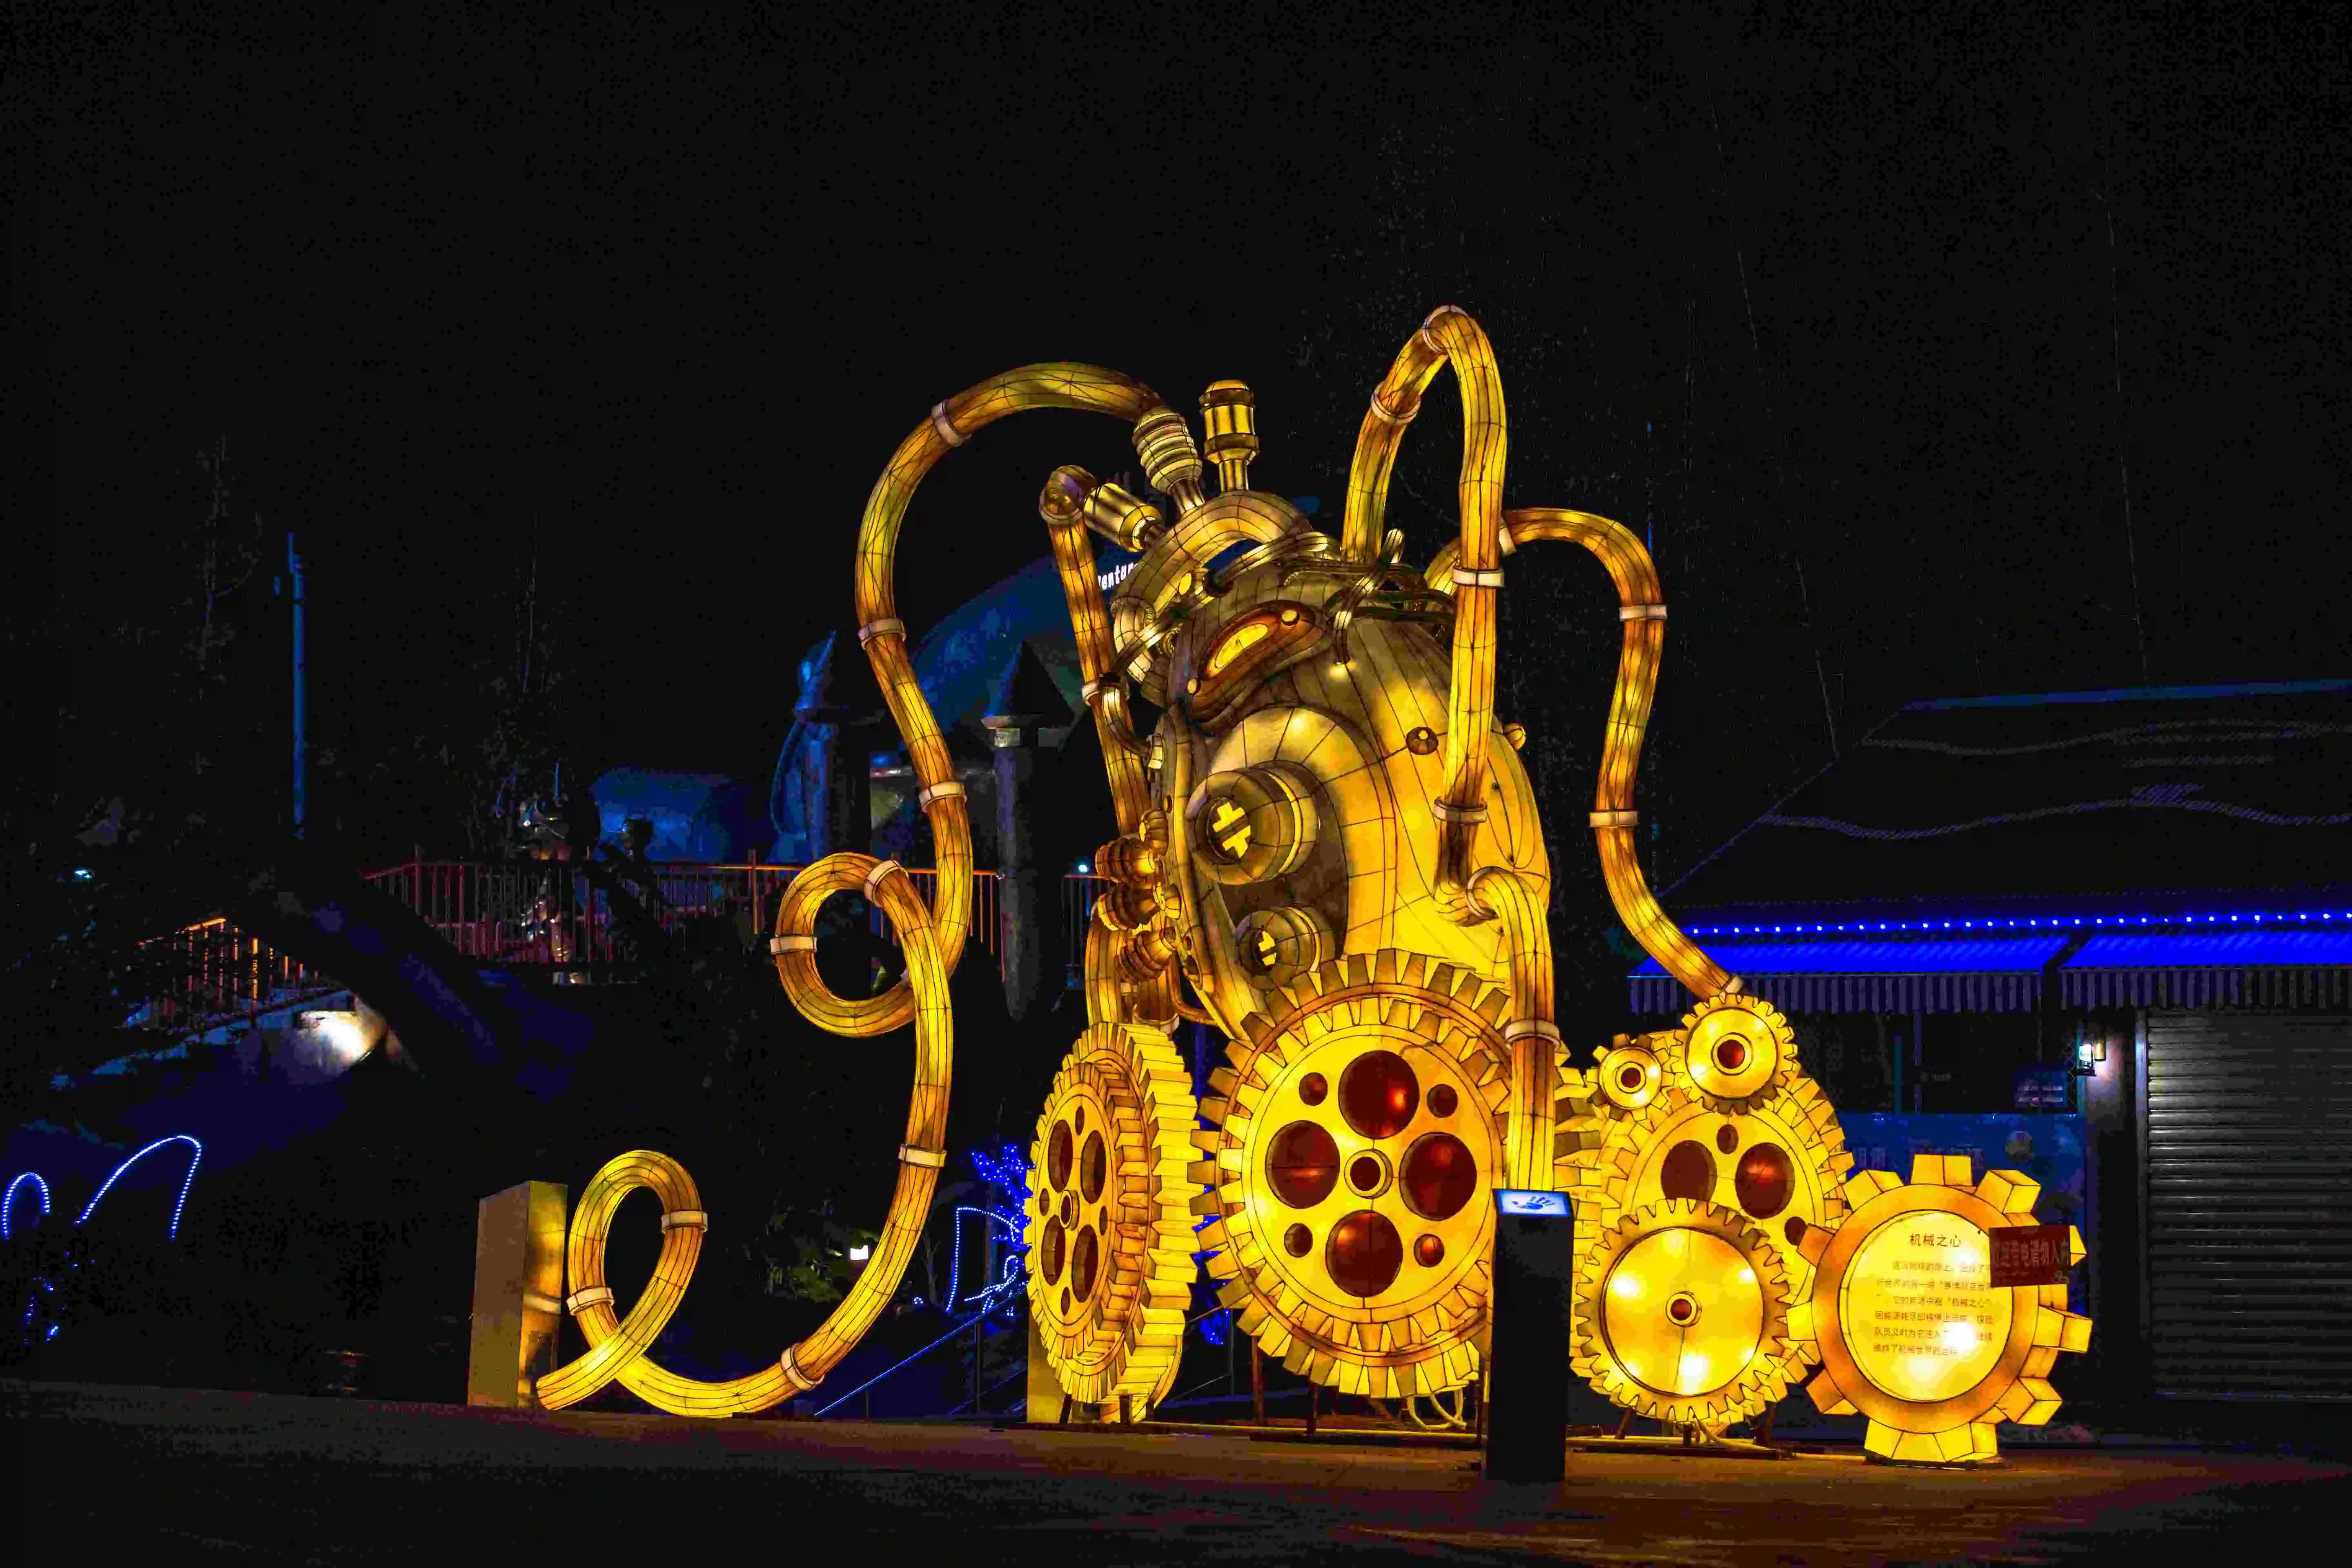 Nicroハロウィン用品アクセサリーパンプキンランタンおもちゃハロウィンシーンテーマ雰囲気レイアウト背景装飾LEDライト